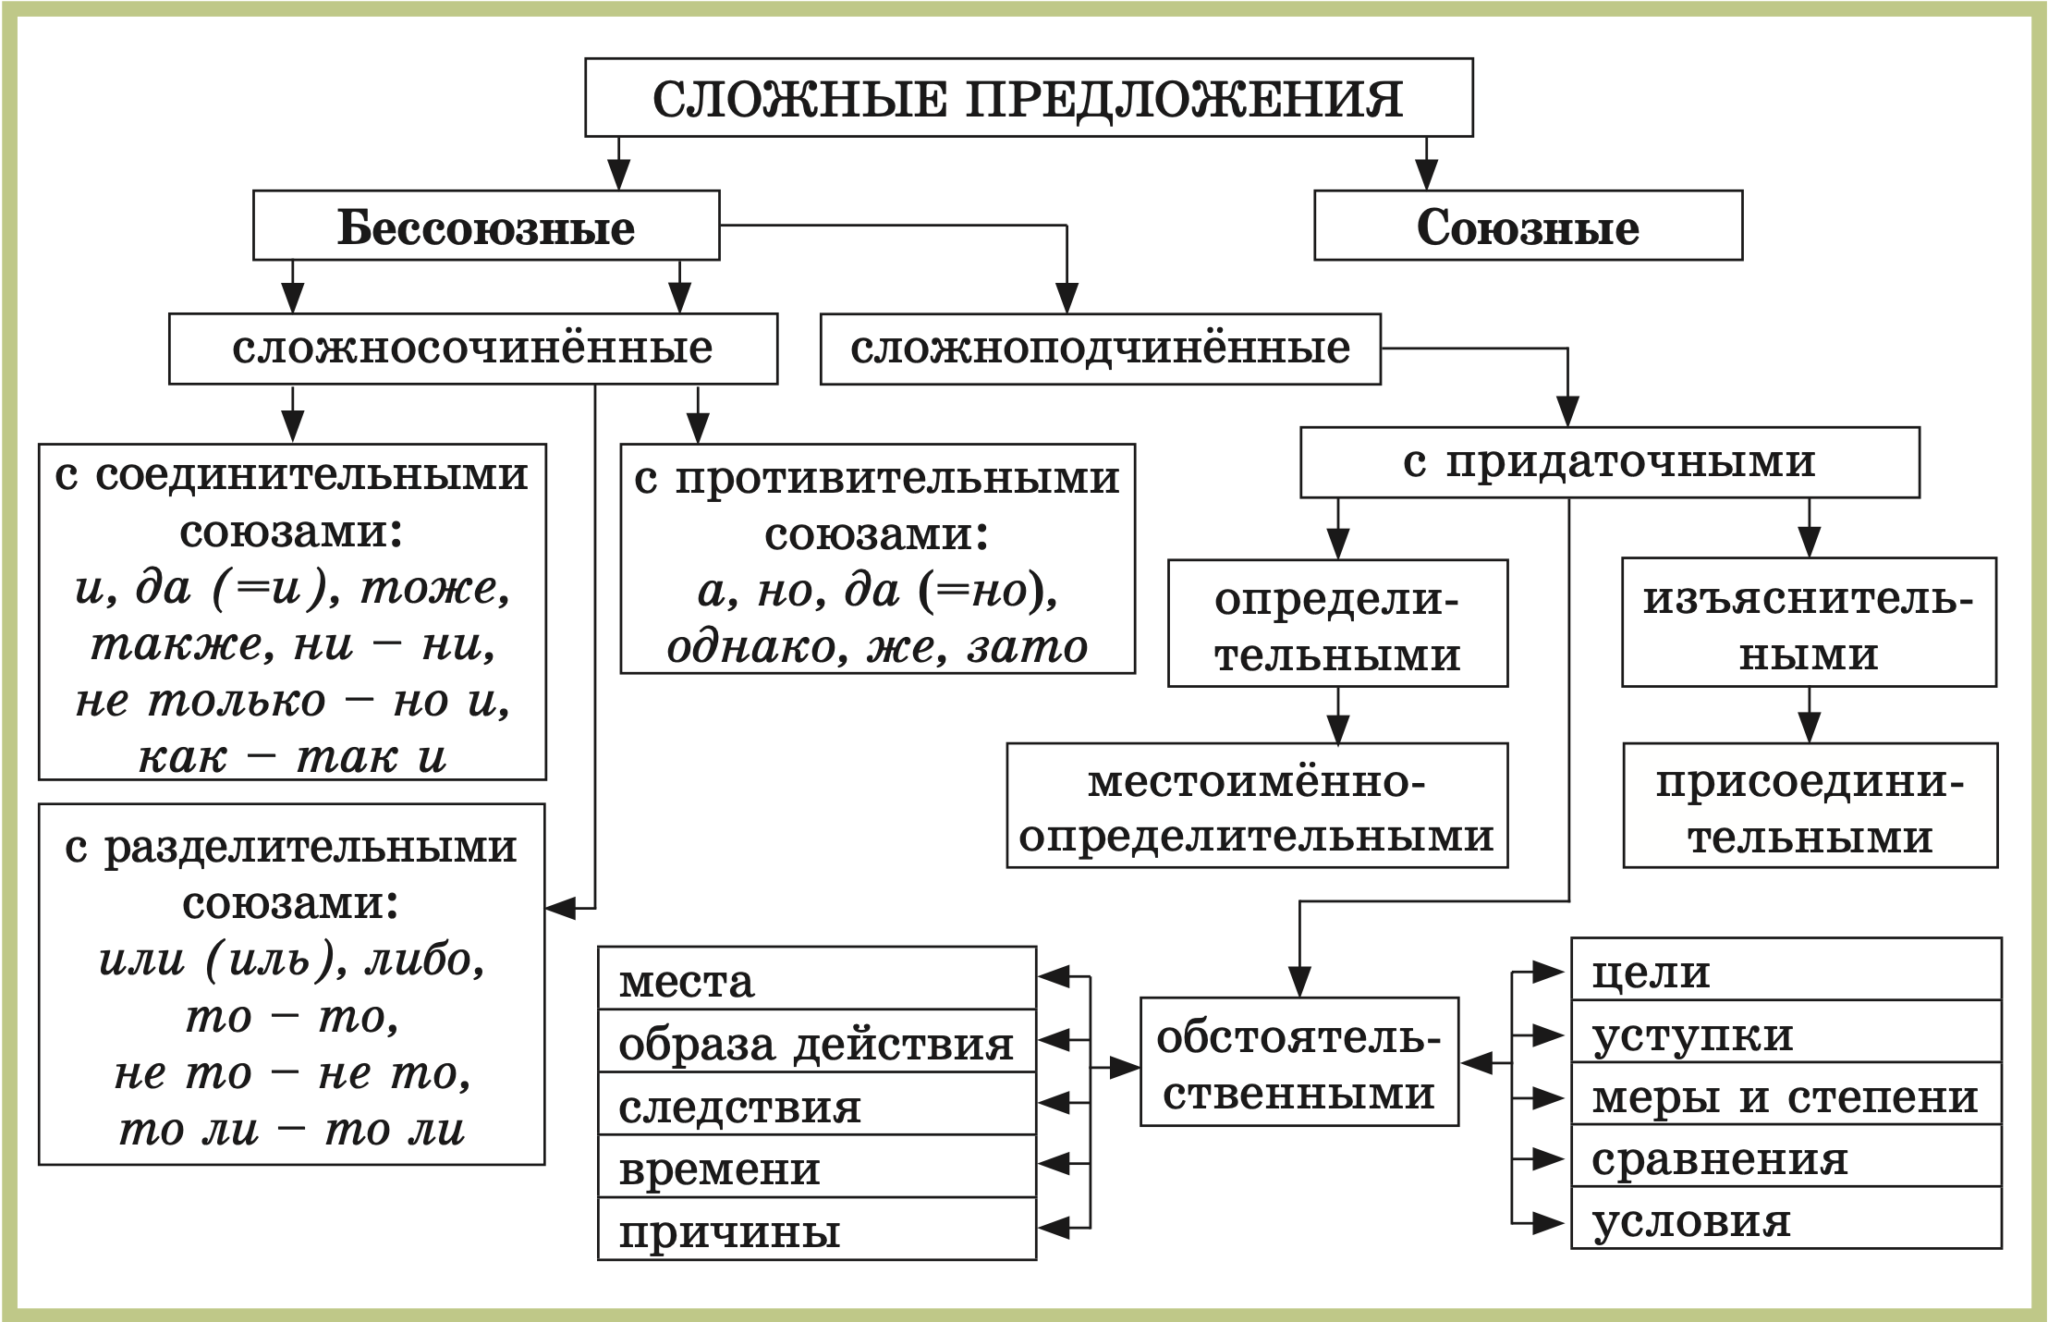 Примеры различных сложных предложений. Схемы русский язык 5 класс виды сложных предложений. Схема виды сложных предложений 9 класс. Схема сложного предложения 5 класс. Схема сложного предложения сложносочиненного.